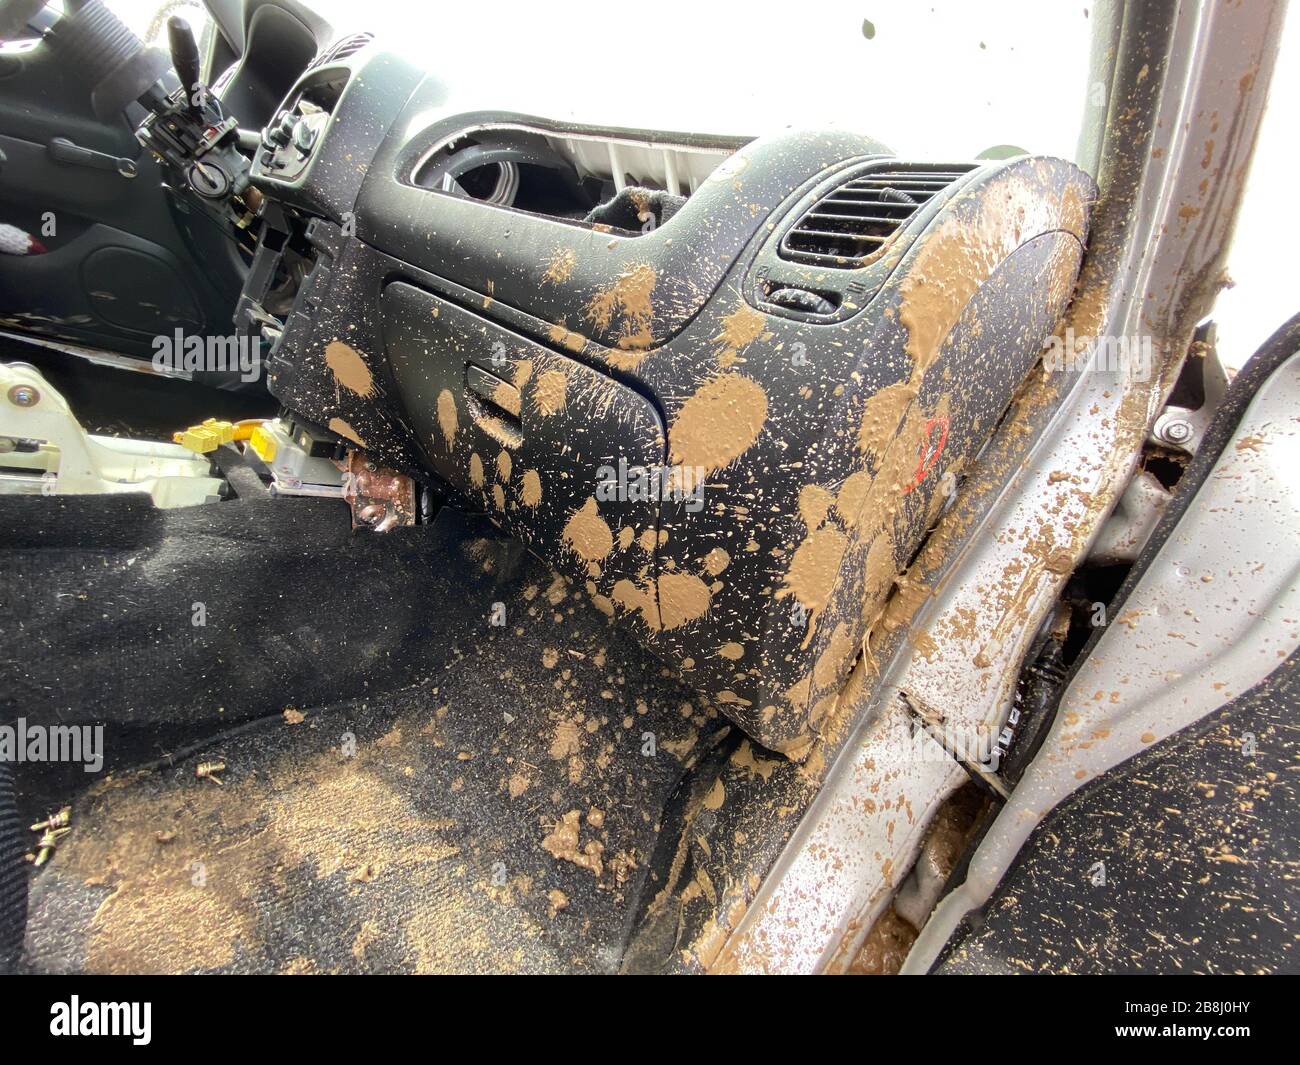 Il dettaglio della vettura completamente sporca dal fango dopo la gara di trascinamento su un campo durante l'inverno. Necessita di una pulizia completa degli esterni e degli interni. Foto Stock